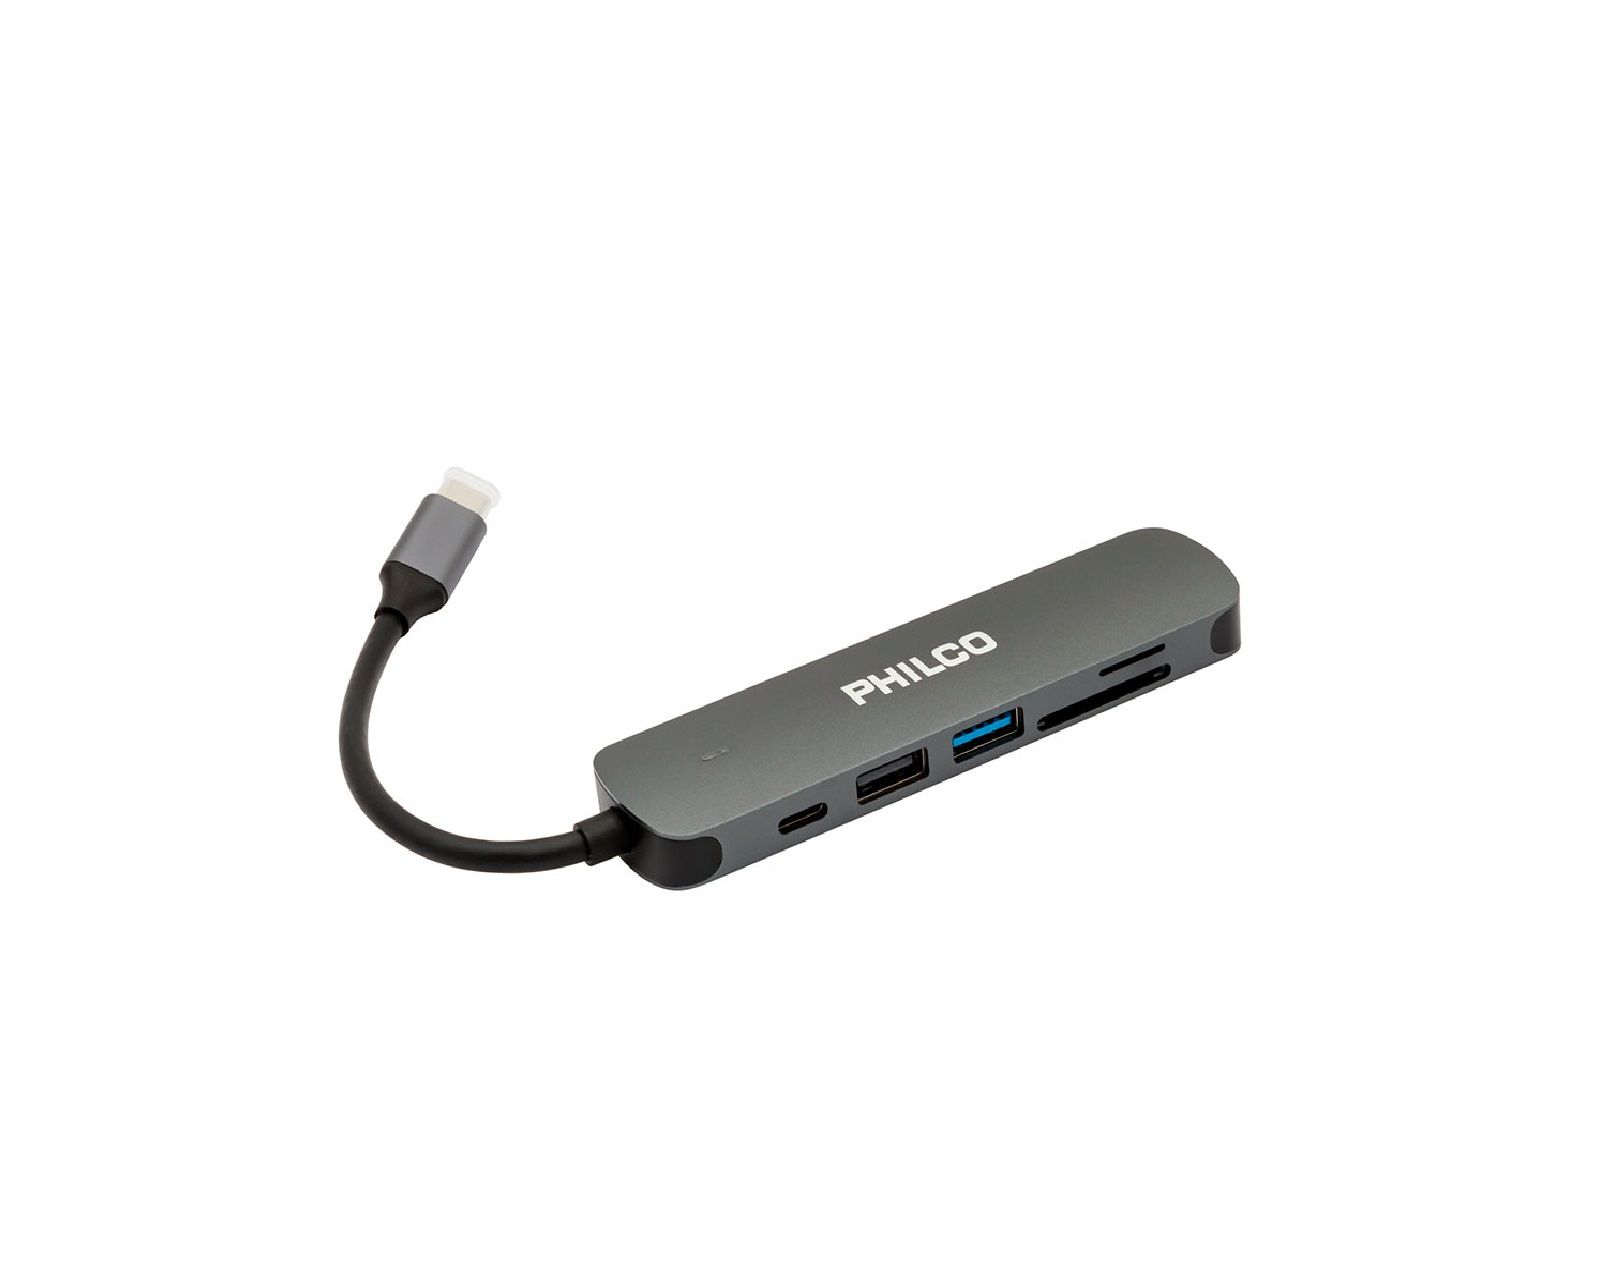 ADAPTADOR USB-C A USB 3.0 PHILCO